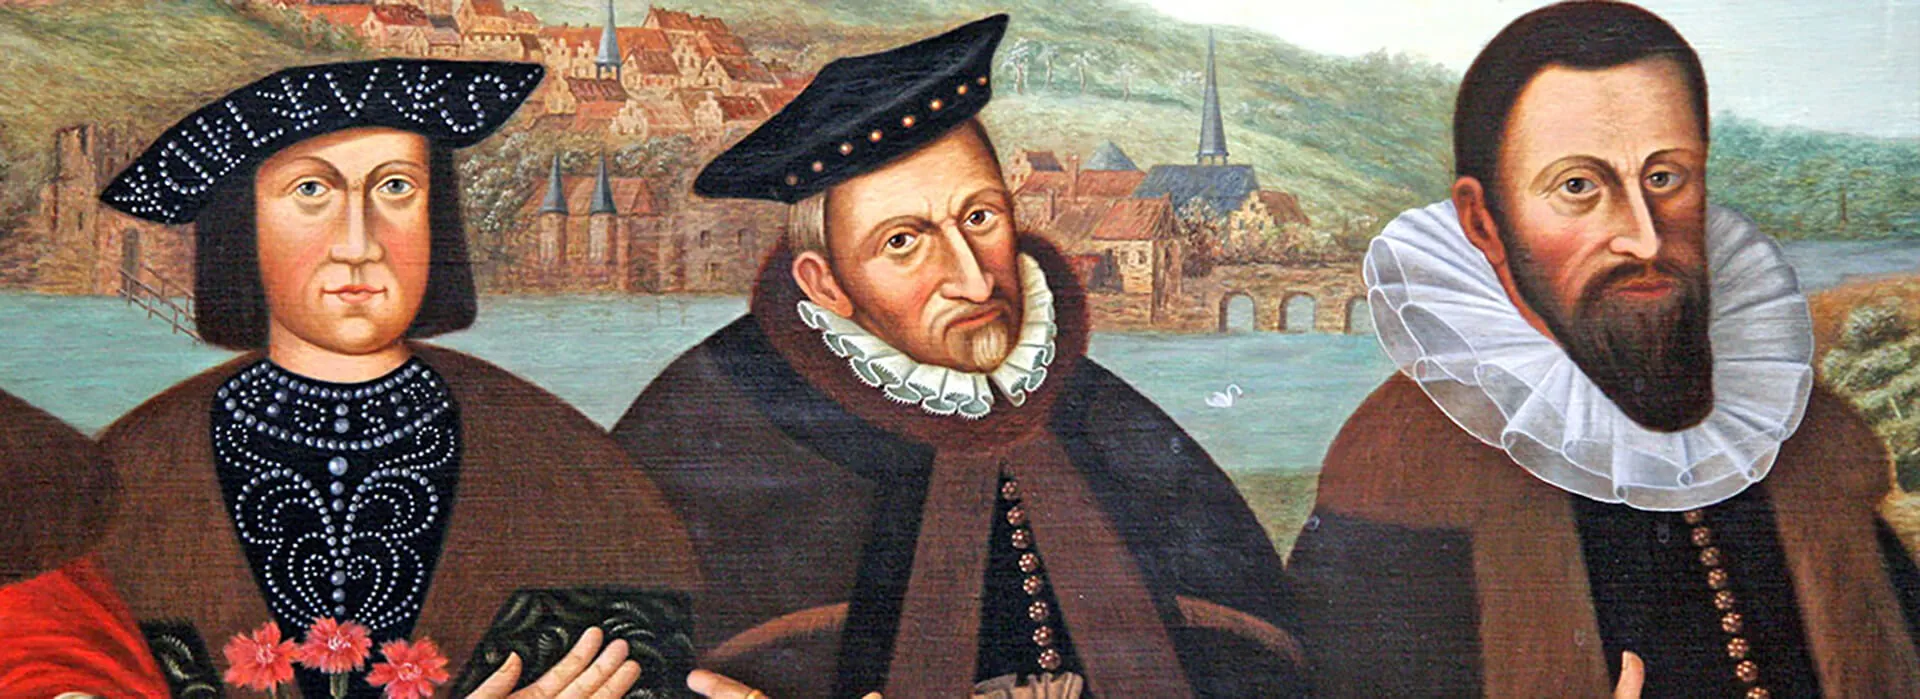 Sonderausstellung - 500 Jahre Reformation